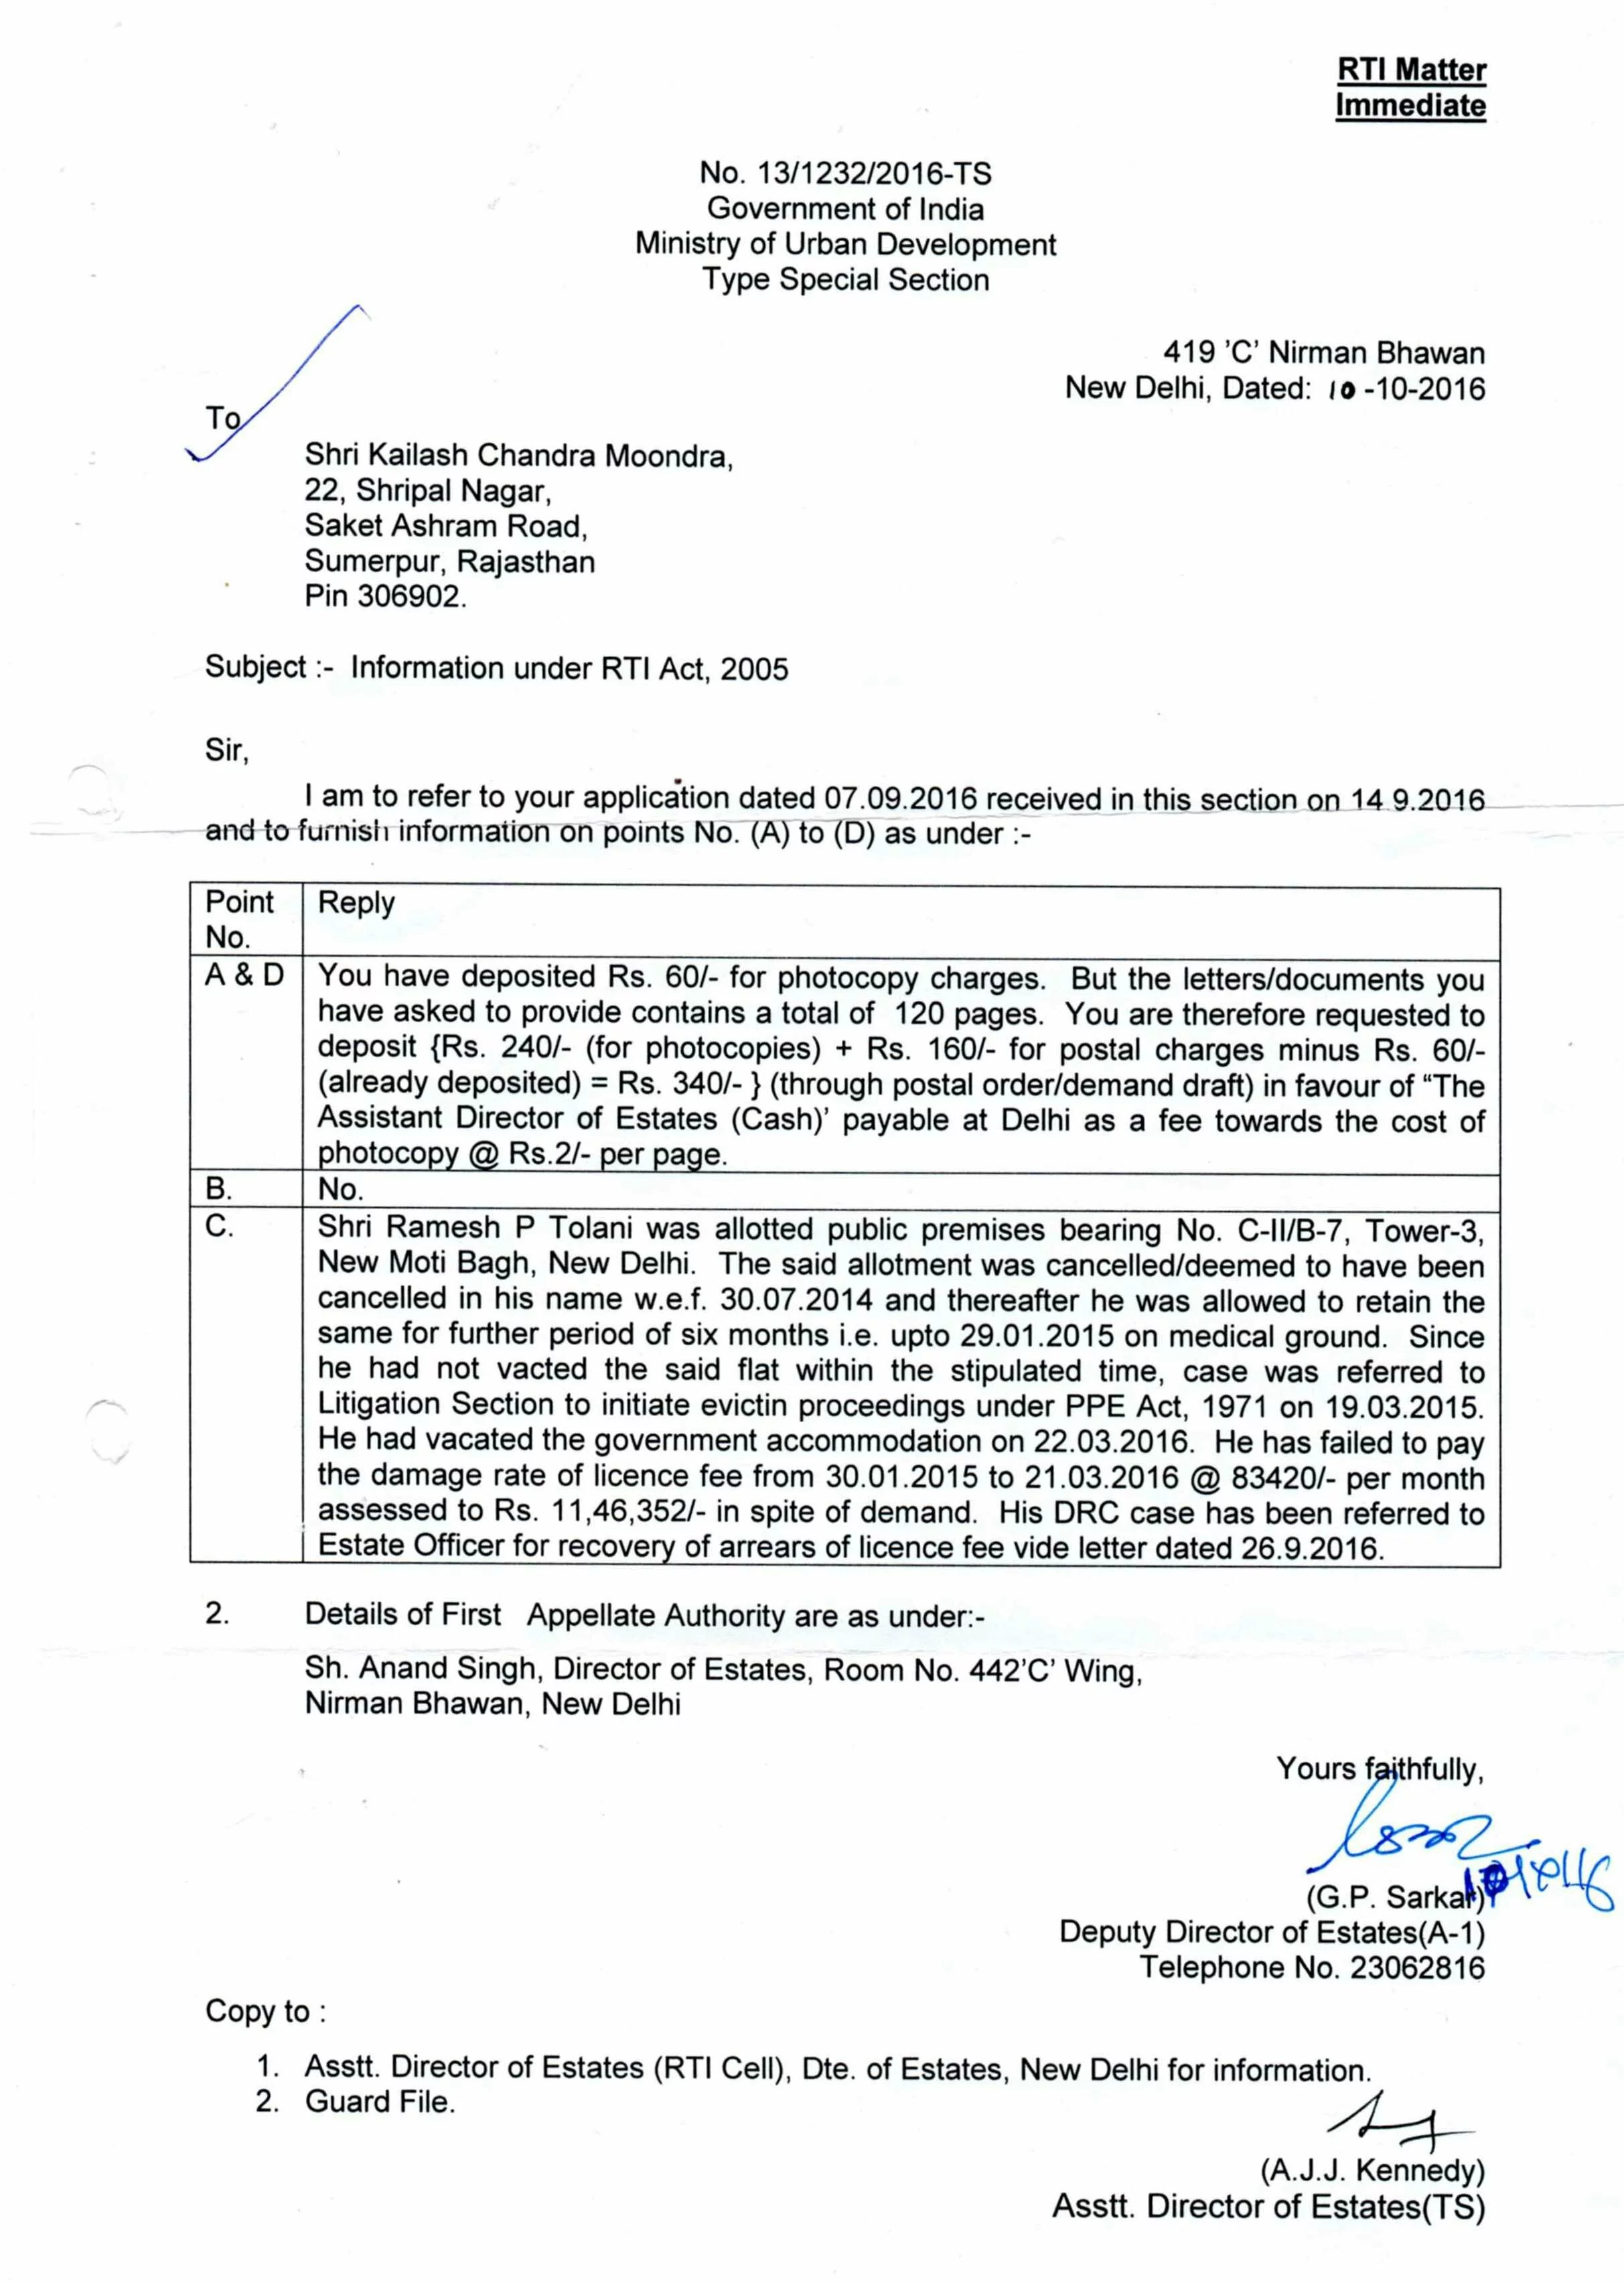 Letter from Department of Urban Development, Delhi - 1